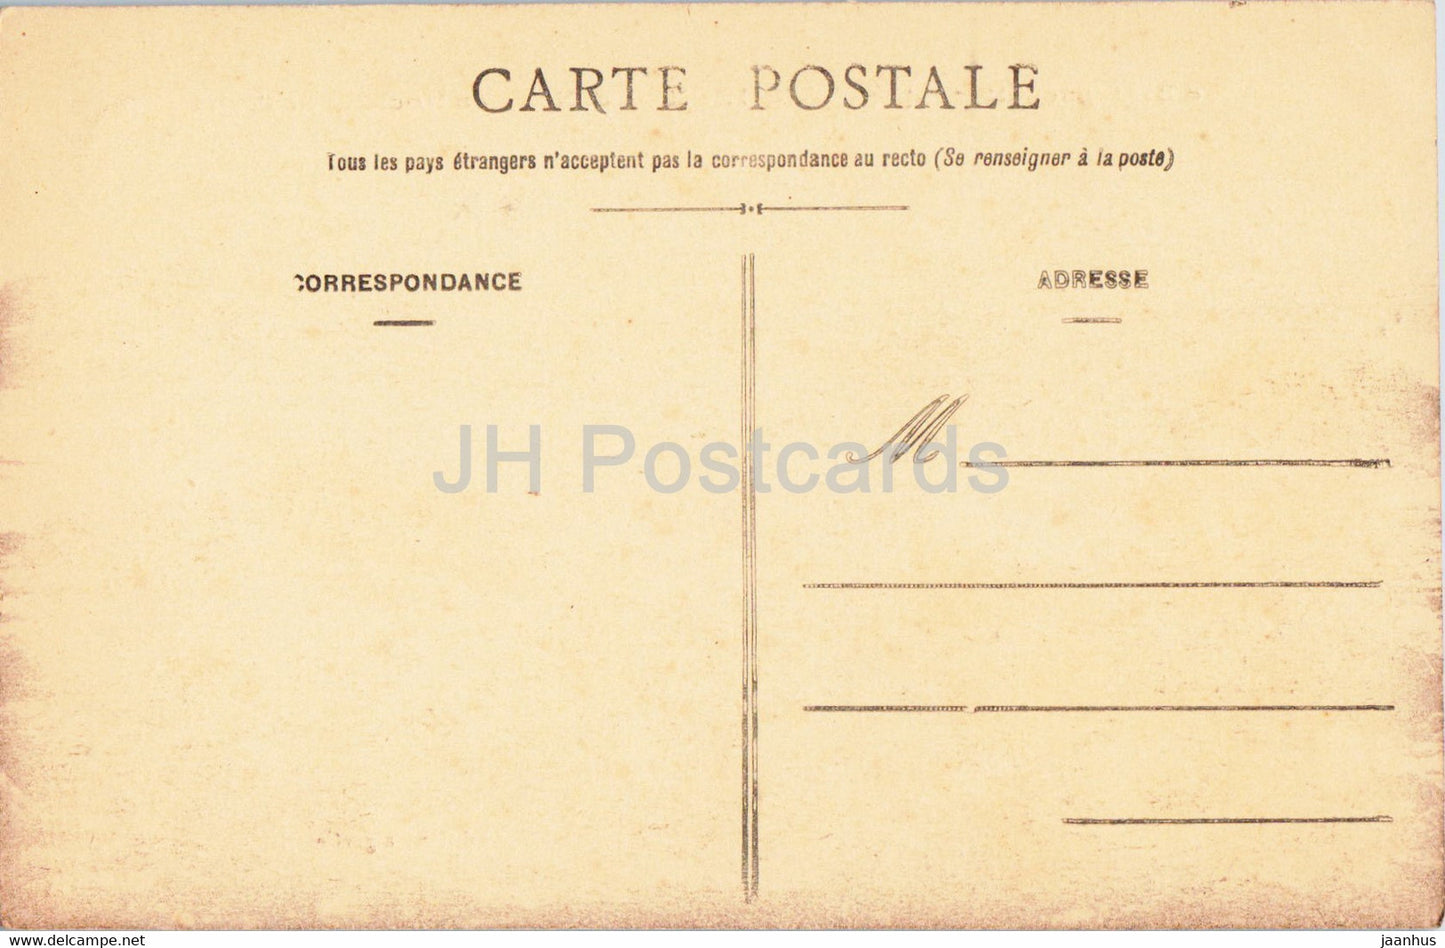 Lancieux - Les Rochers de l'Islet - carte postale ancienne - France - inutilisée